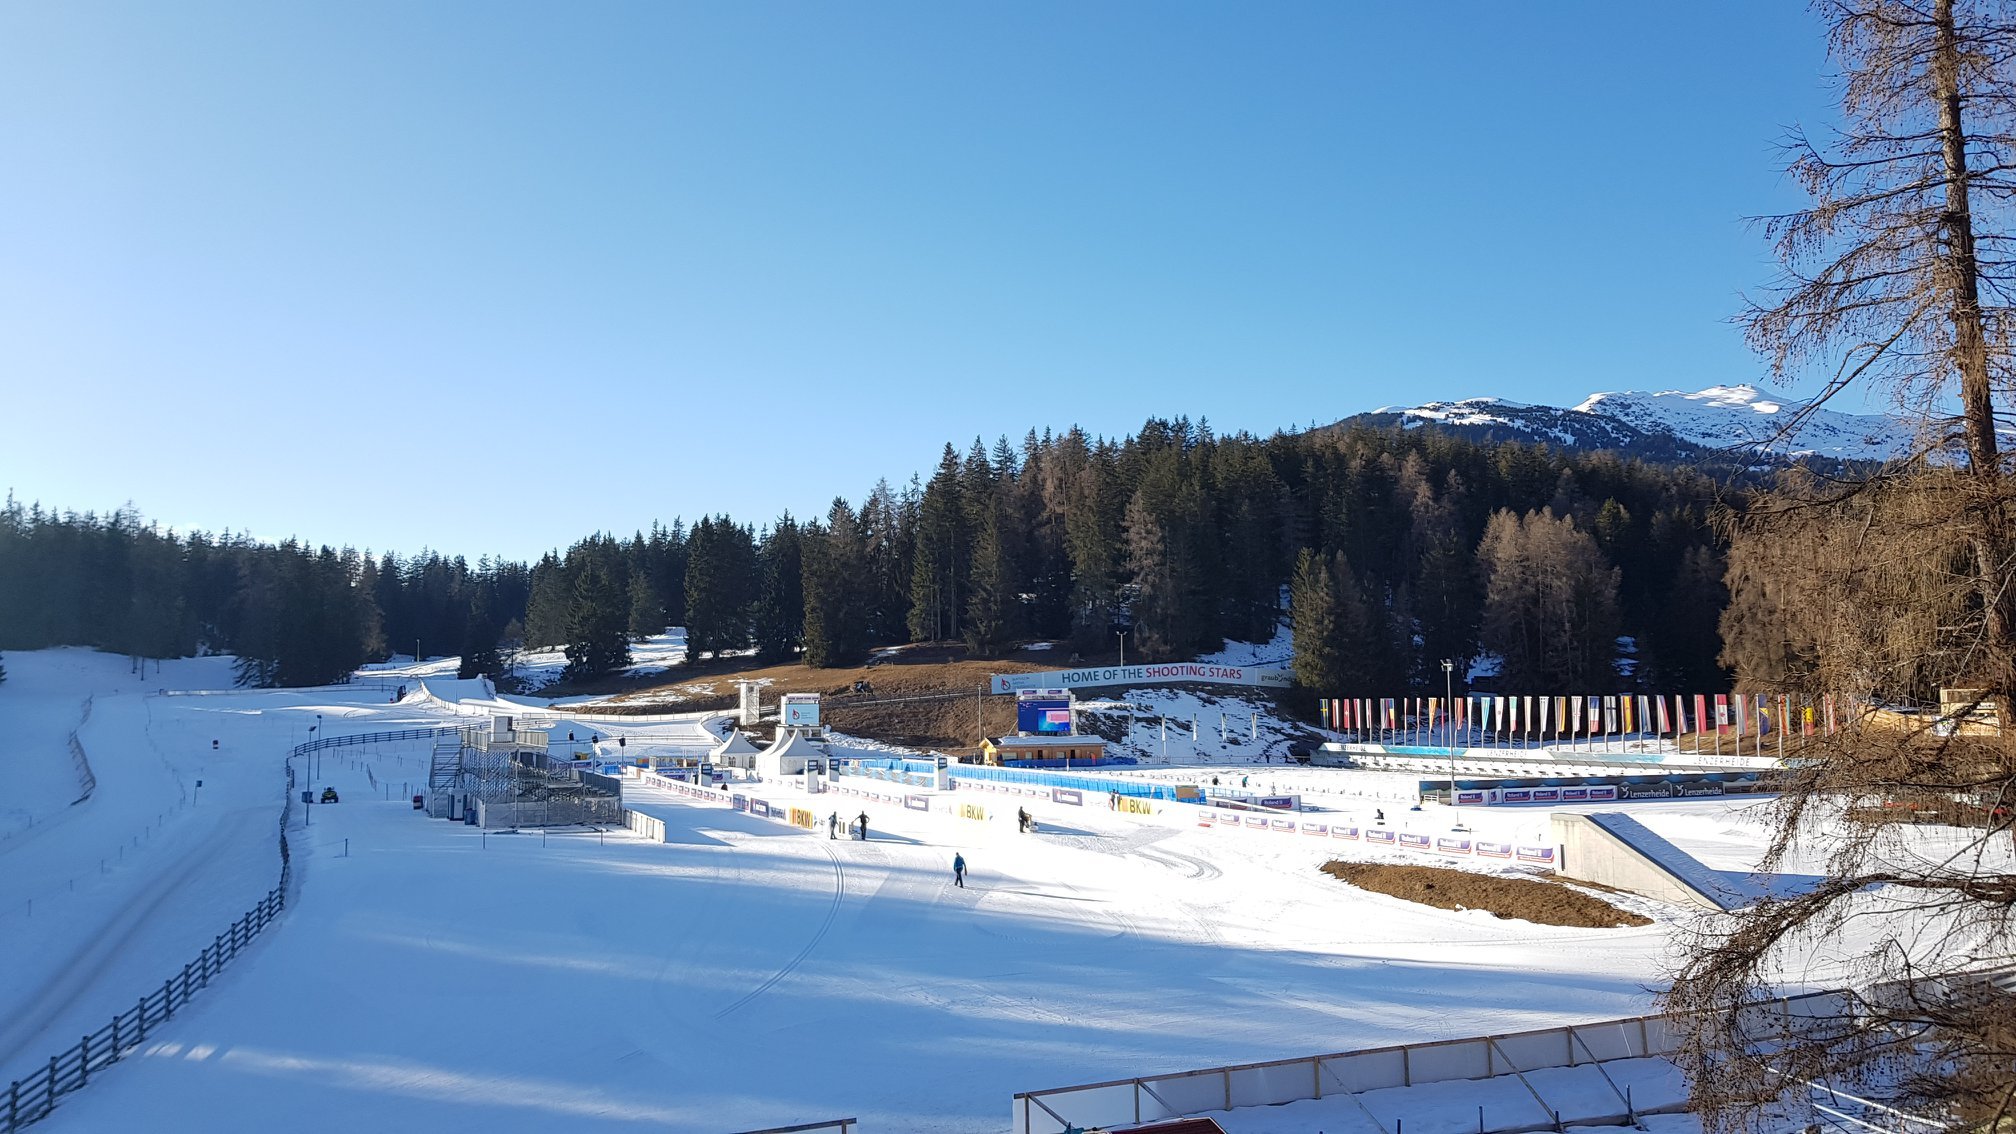 BIATHLON - Dimanche, les Championnats du monde Jeune / Juniors débuteront à Lenzerheide avec les épreuves de l'individuel. Après 6 médailles l'hiver dernier, la France aura de grandes ambitions sur ces mondiaux en terres suisses. 